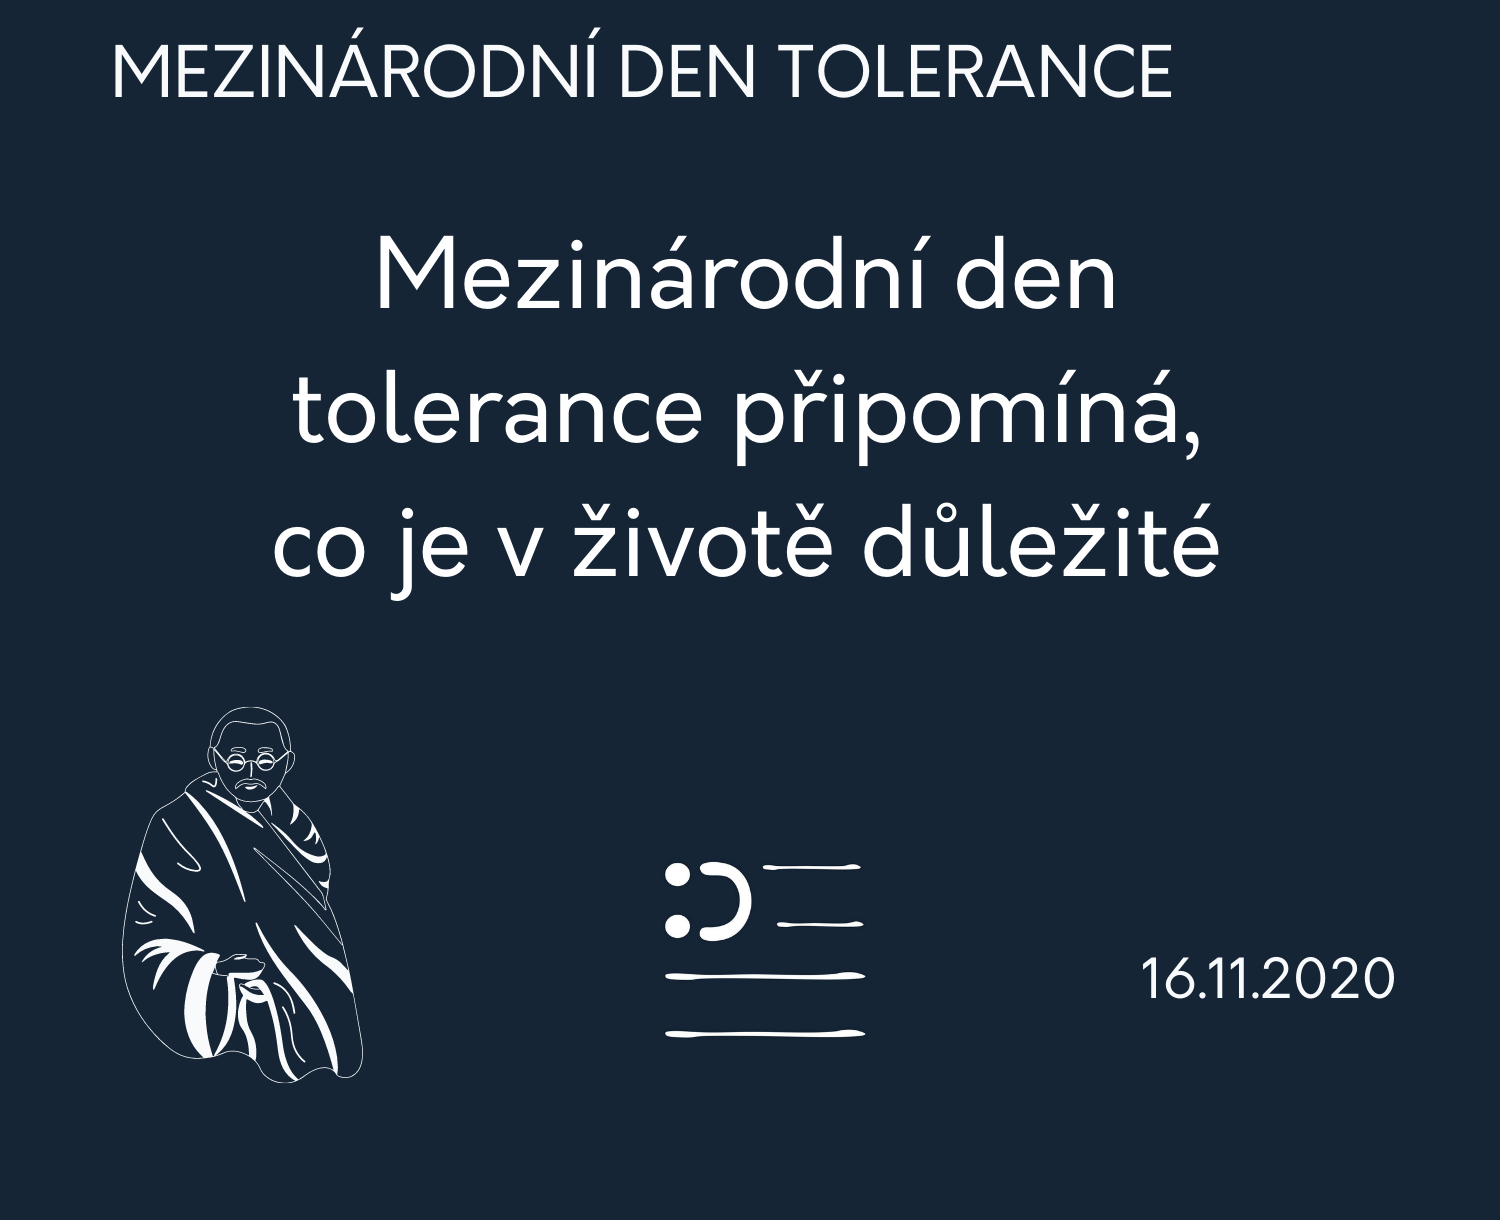 Mezinárodní den tolerance připomíná, co je v životě důležité